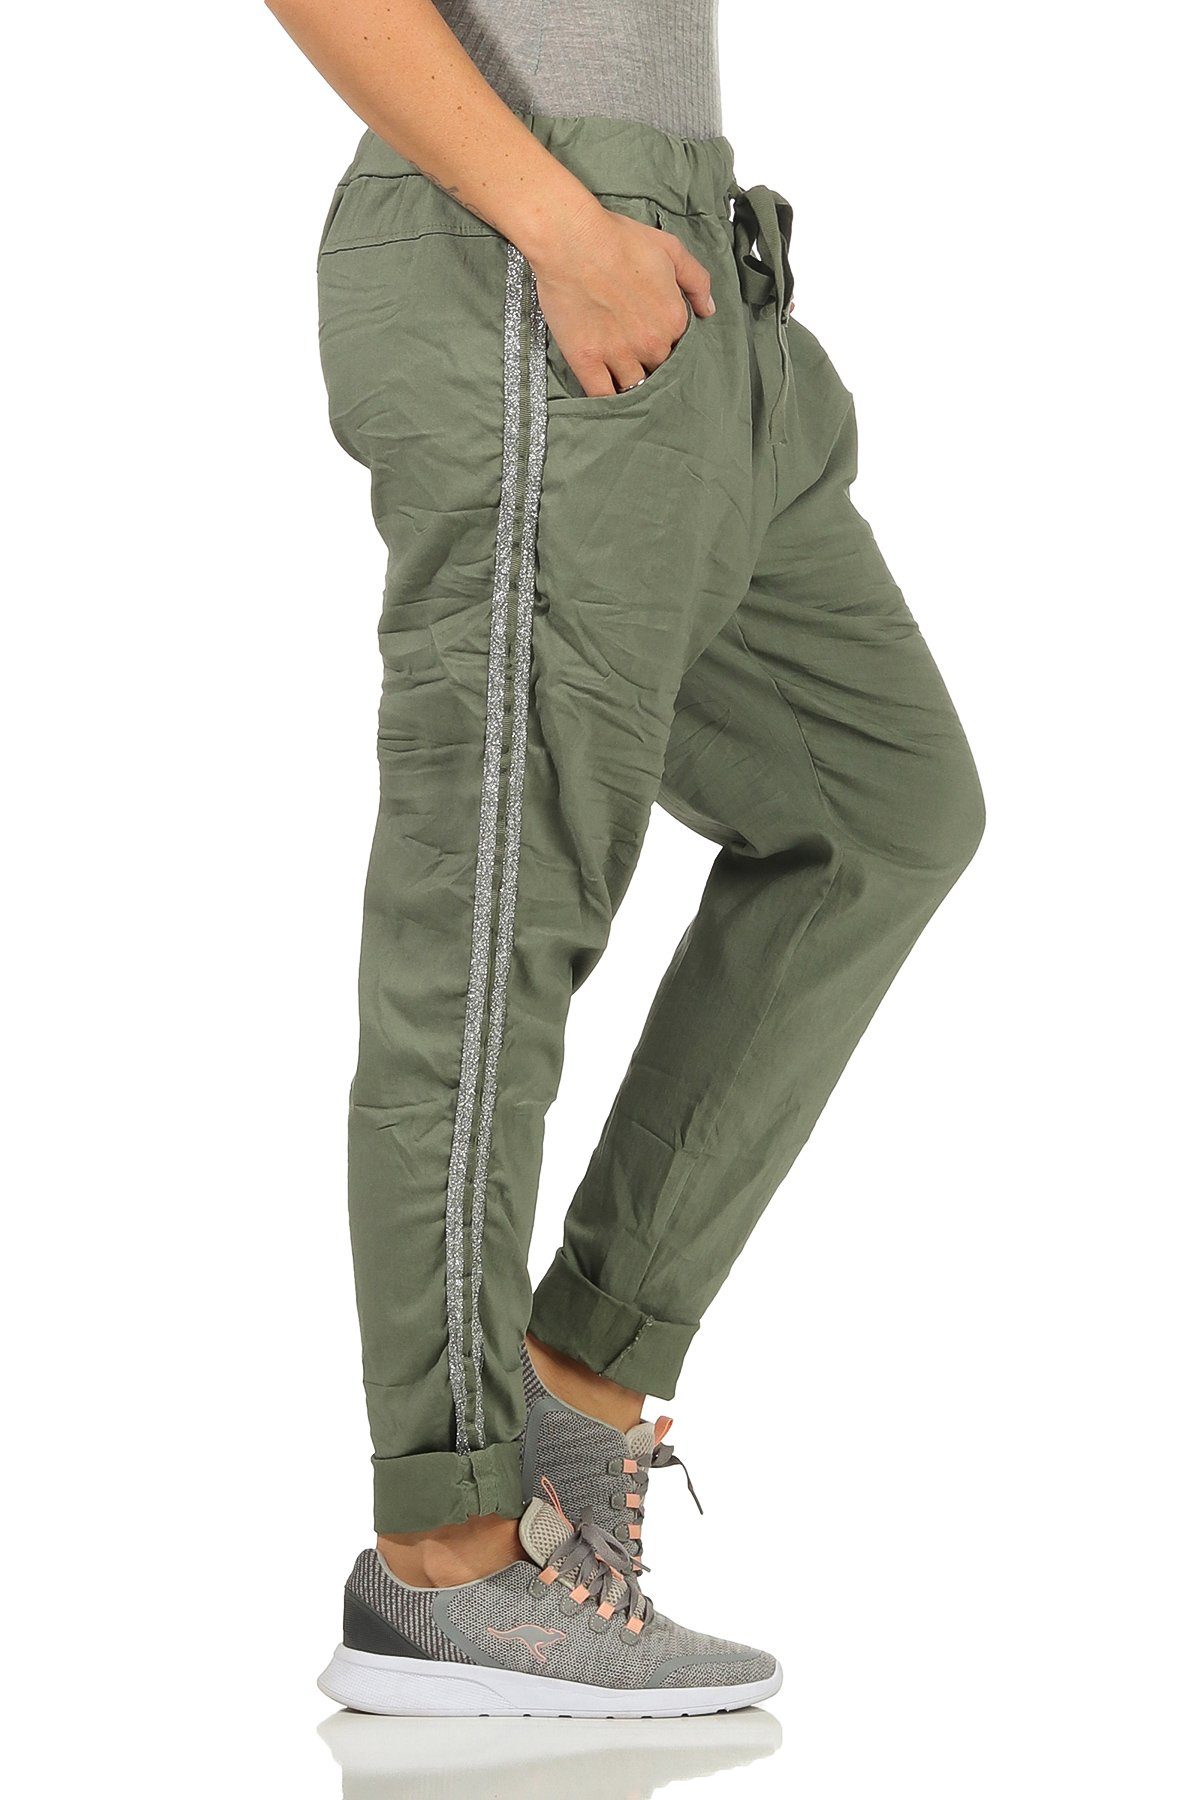 Mississhop Jogginghose Damen Hose Baumwollhose mit Seitlichen Silberstreifen M.348 Oliv | Jogginghosen